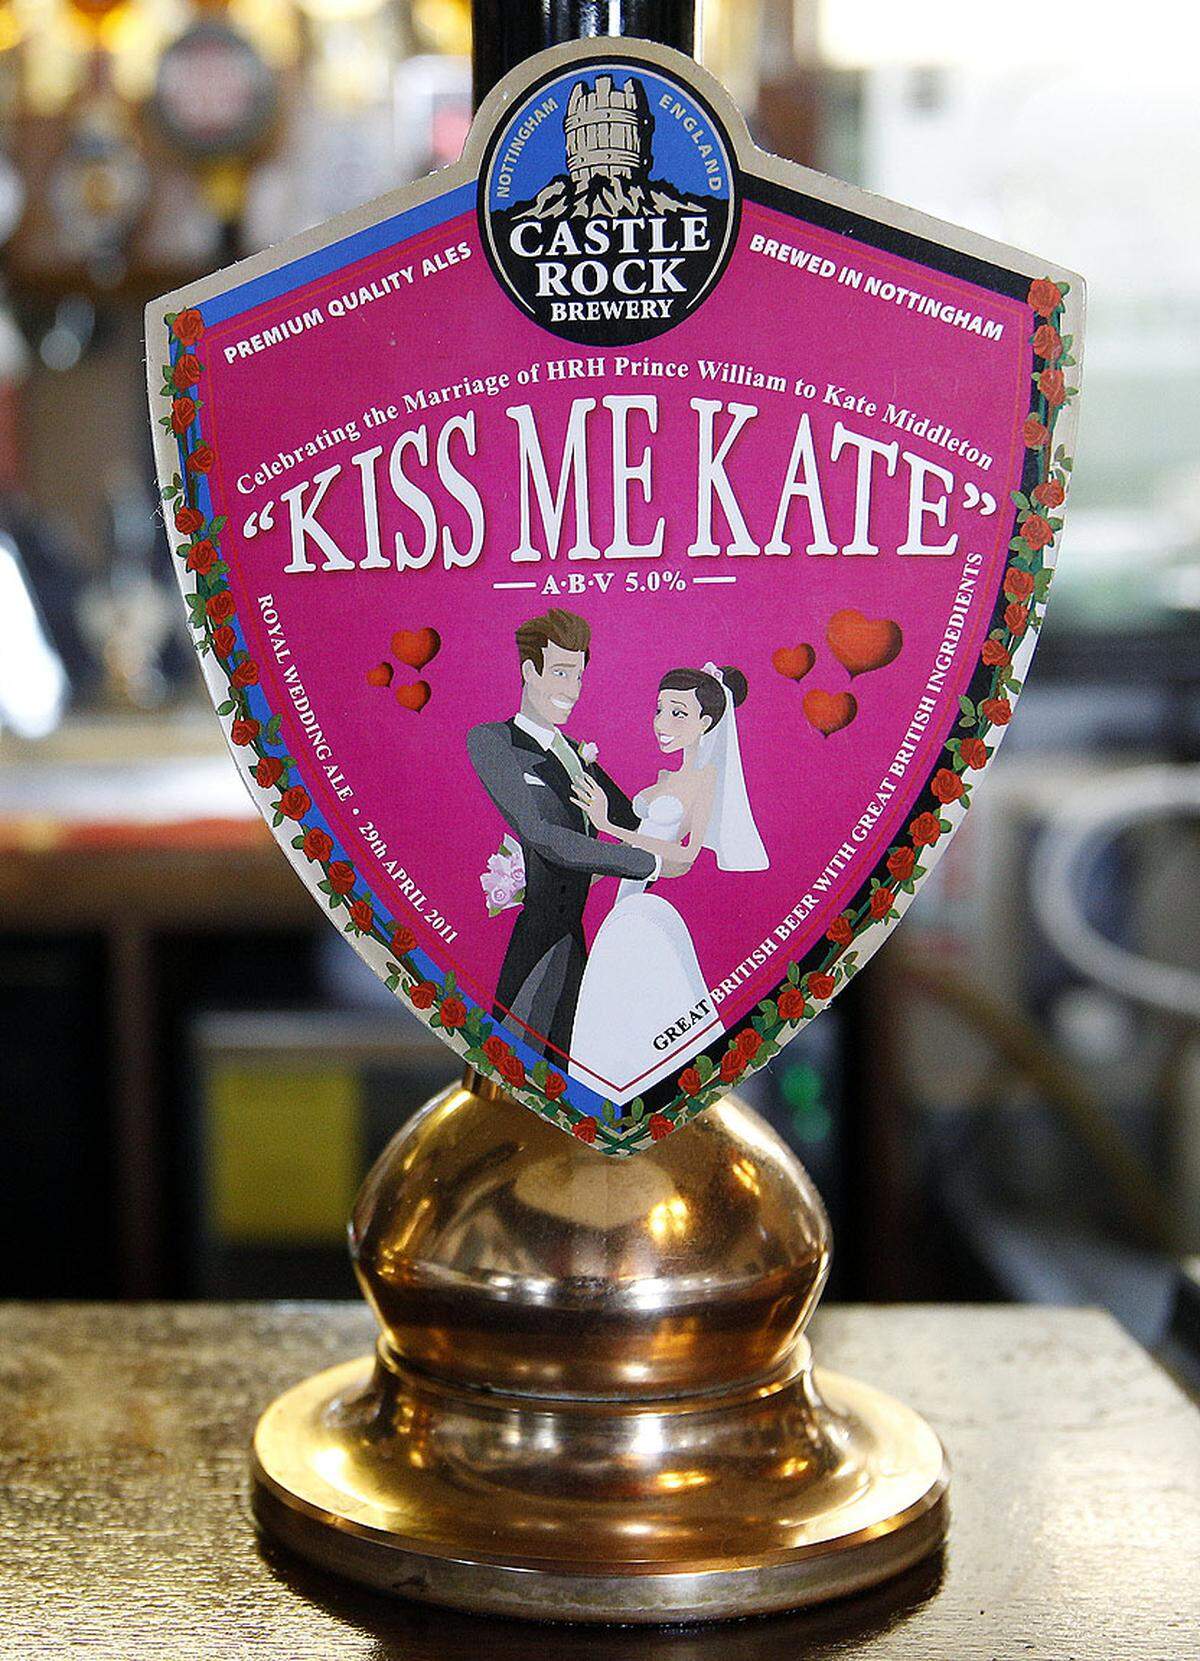 Während die Hochzeitsgesellschaft wohl mit Champagner anstoßen wird, dürfen sich die Zuschauer im Pub mit einem eigens für den Anlass gebrauten Bier zuschütten. "Kiss me Kate" heißt die Kreation einer Brauerei im englischen Nottinghamshire.